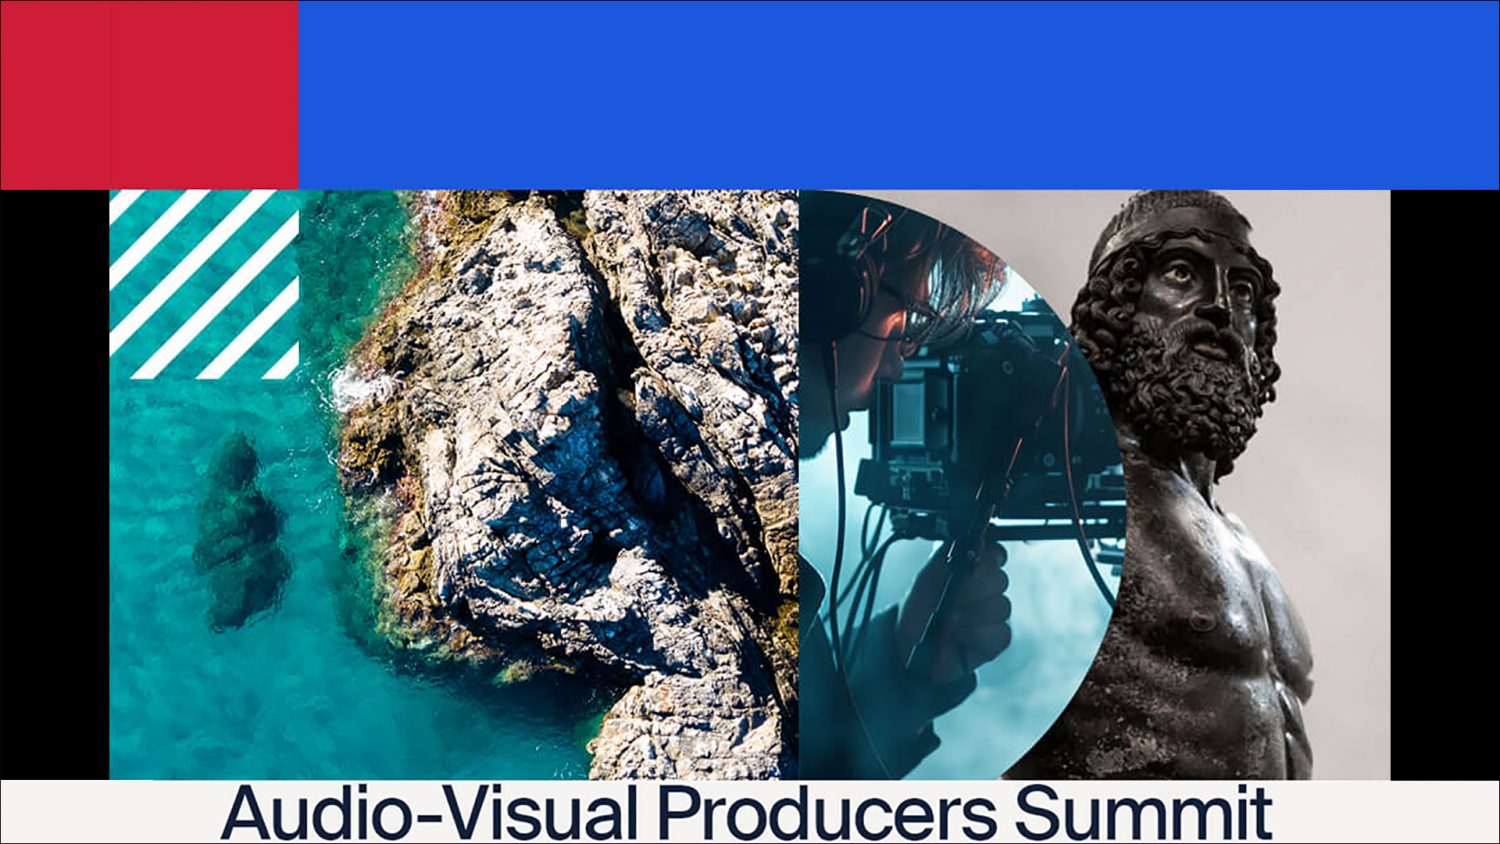 Audio-Visual Producers Summit, al via la terza edizione